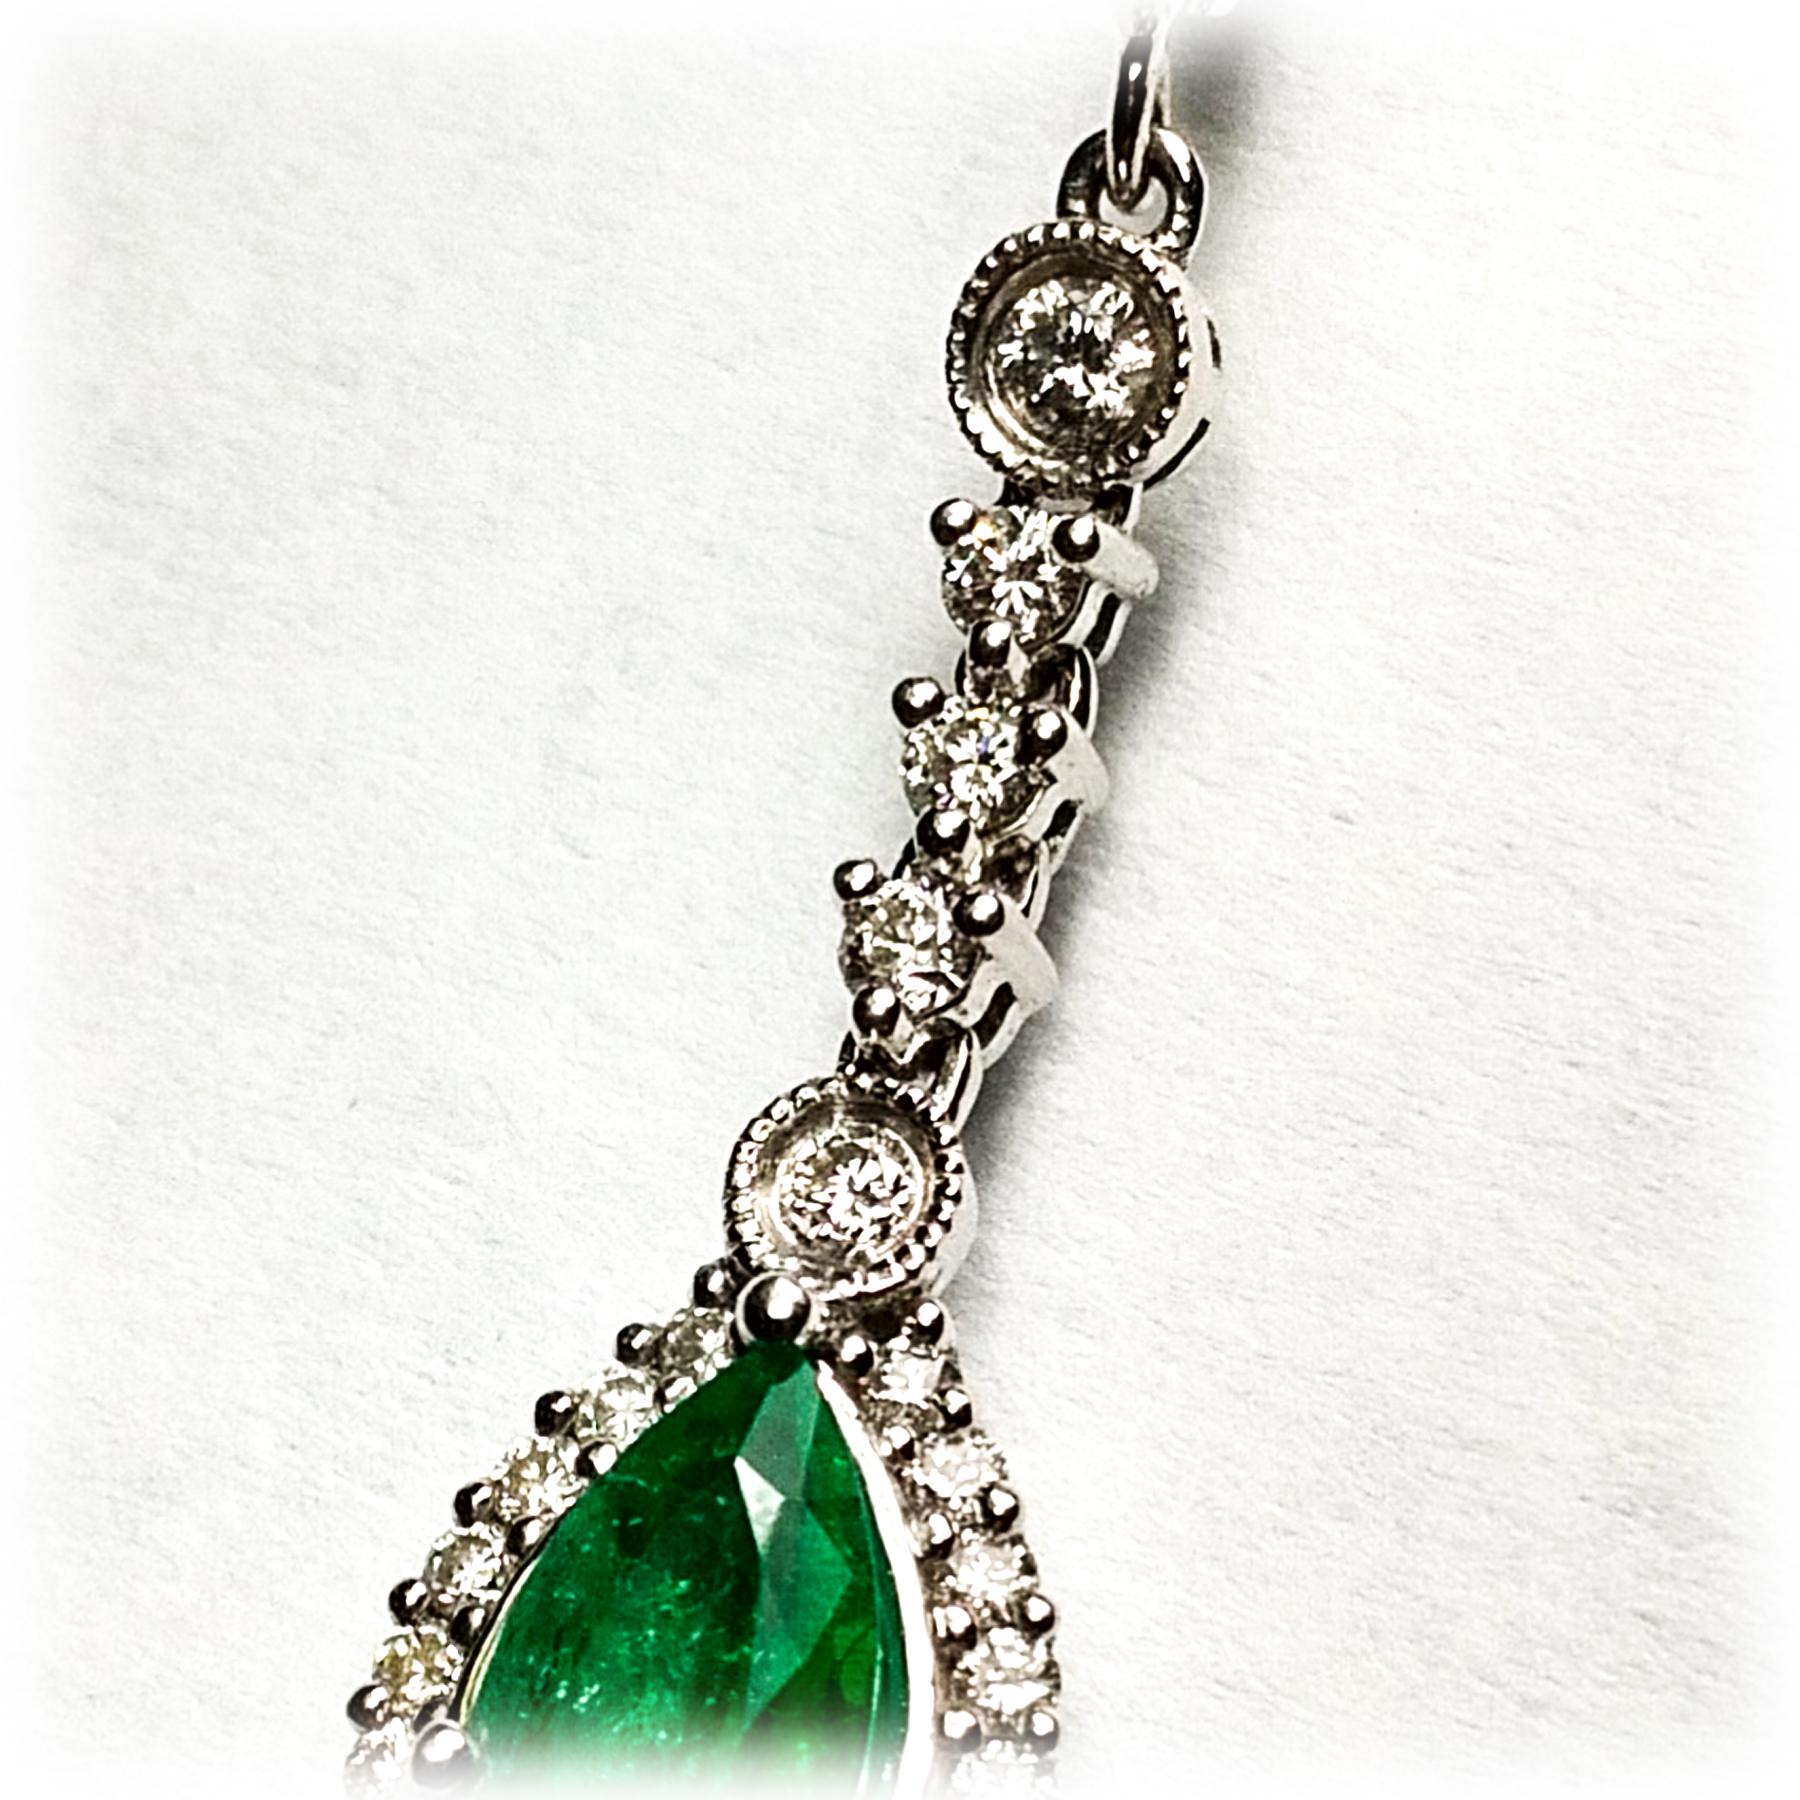 Elegante birnenförmige Ohrringe mit Smaragd und Diamanten. Lebendiger grüner, birnenförmiger Smaragd, umrahmt von runden Diamanten im Brillantschliff. Handgefertigtes, baumelndes Design in 18 Karat Weißgold. 

Smaragd: 1.53 its, Birnenform,